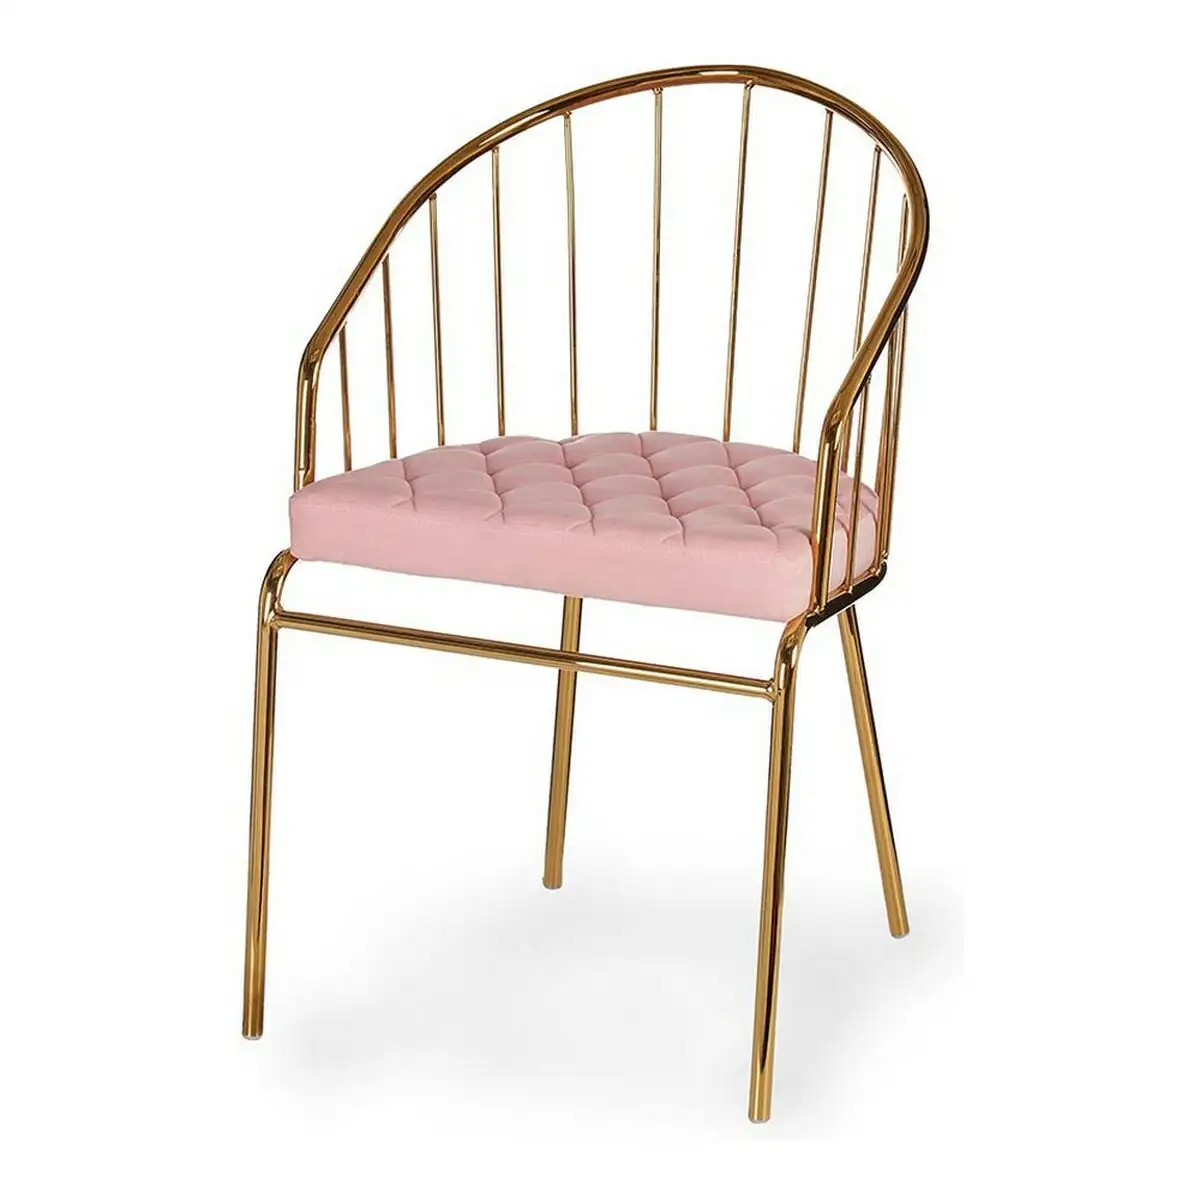 Chaise rose barres dore es polyester fer 51 x 81 x 52 cm_1310. DIAYTAR SENEGAL - L'Artisanat à Portée de Clic. Découvrez notre boutique en ligne pour trouver des produits uniques qui célèbrent la créativité et l'artisanat sénégalais.